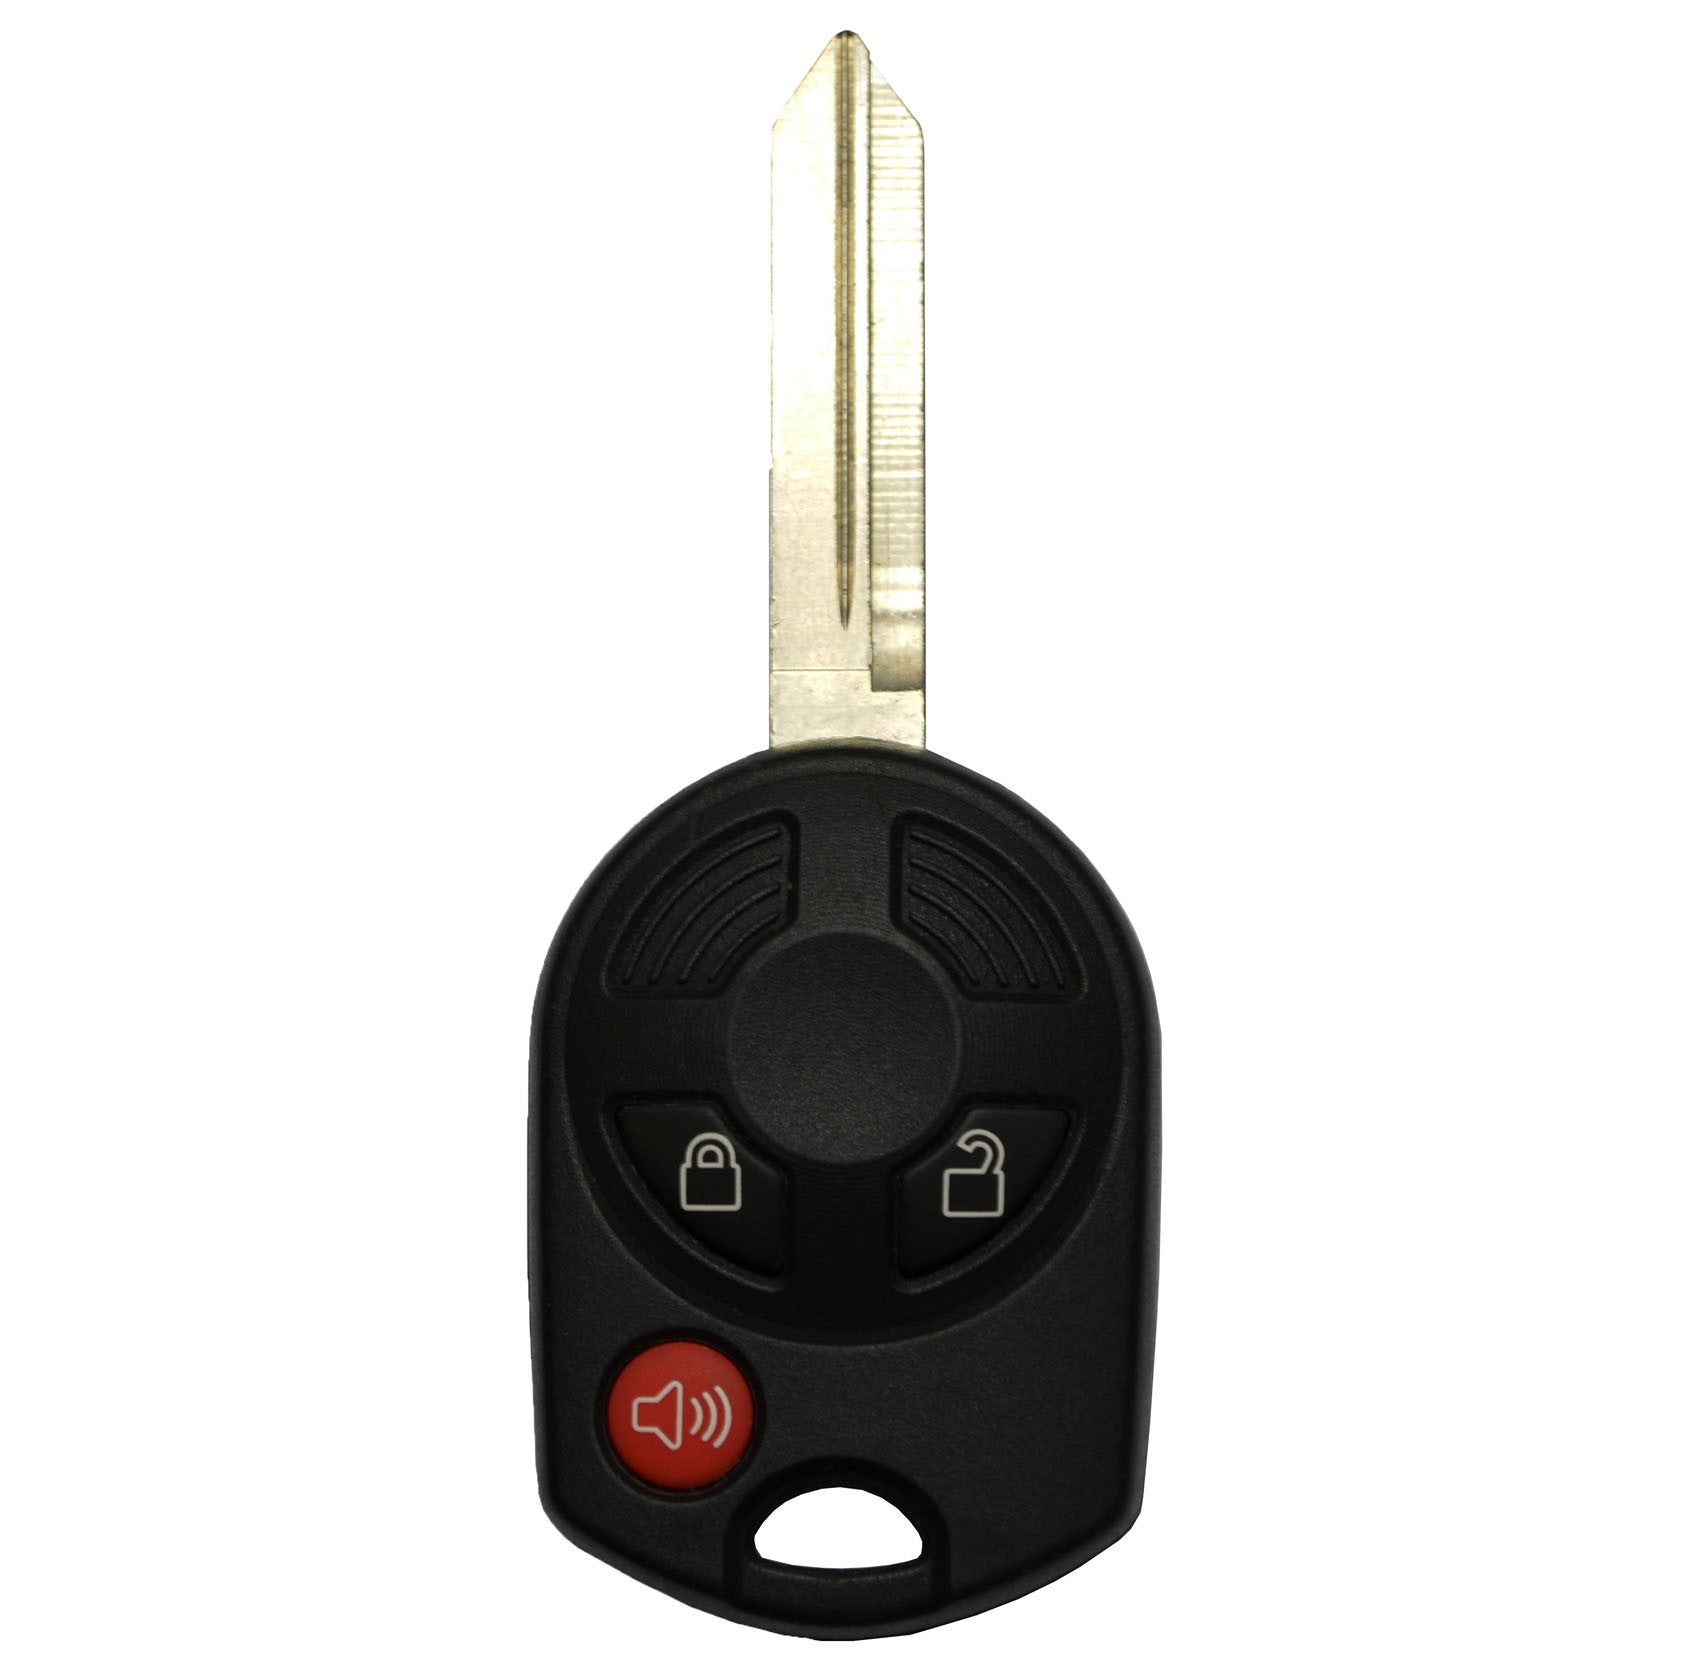 Ford 2001-2013 3 Btn Remote Head Key - FCC ID: OUCD6000022 - ZIPPY LOCKSHOP